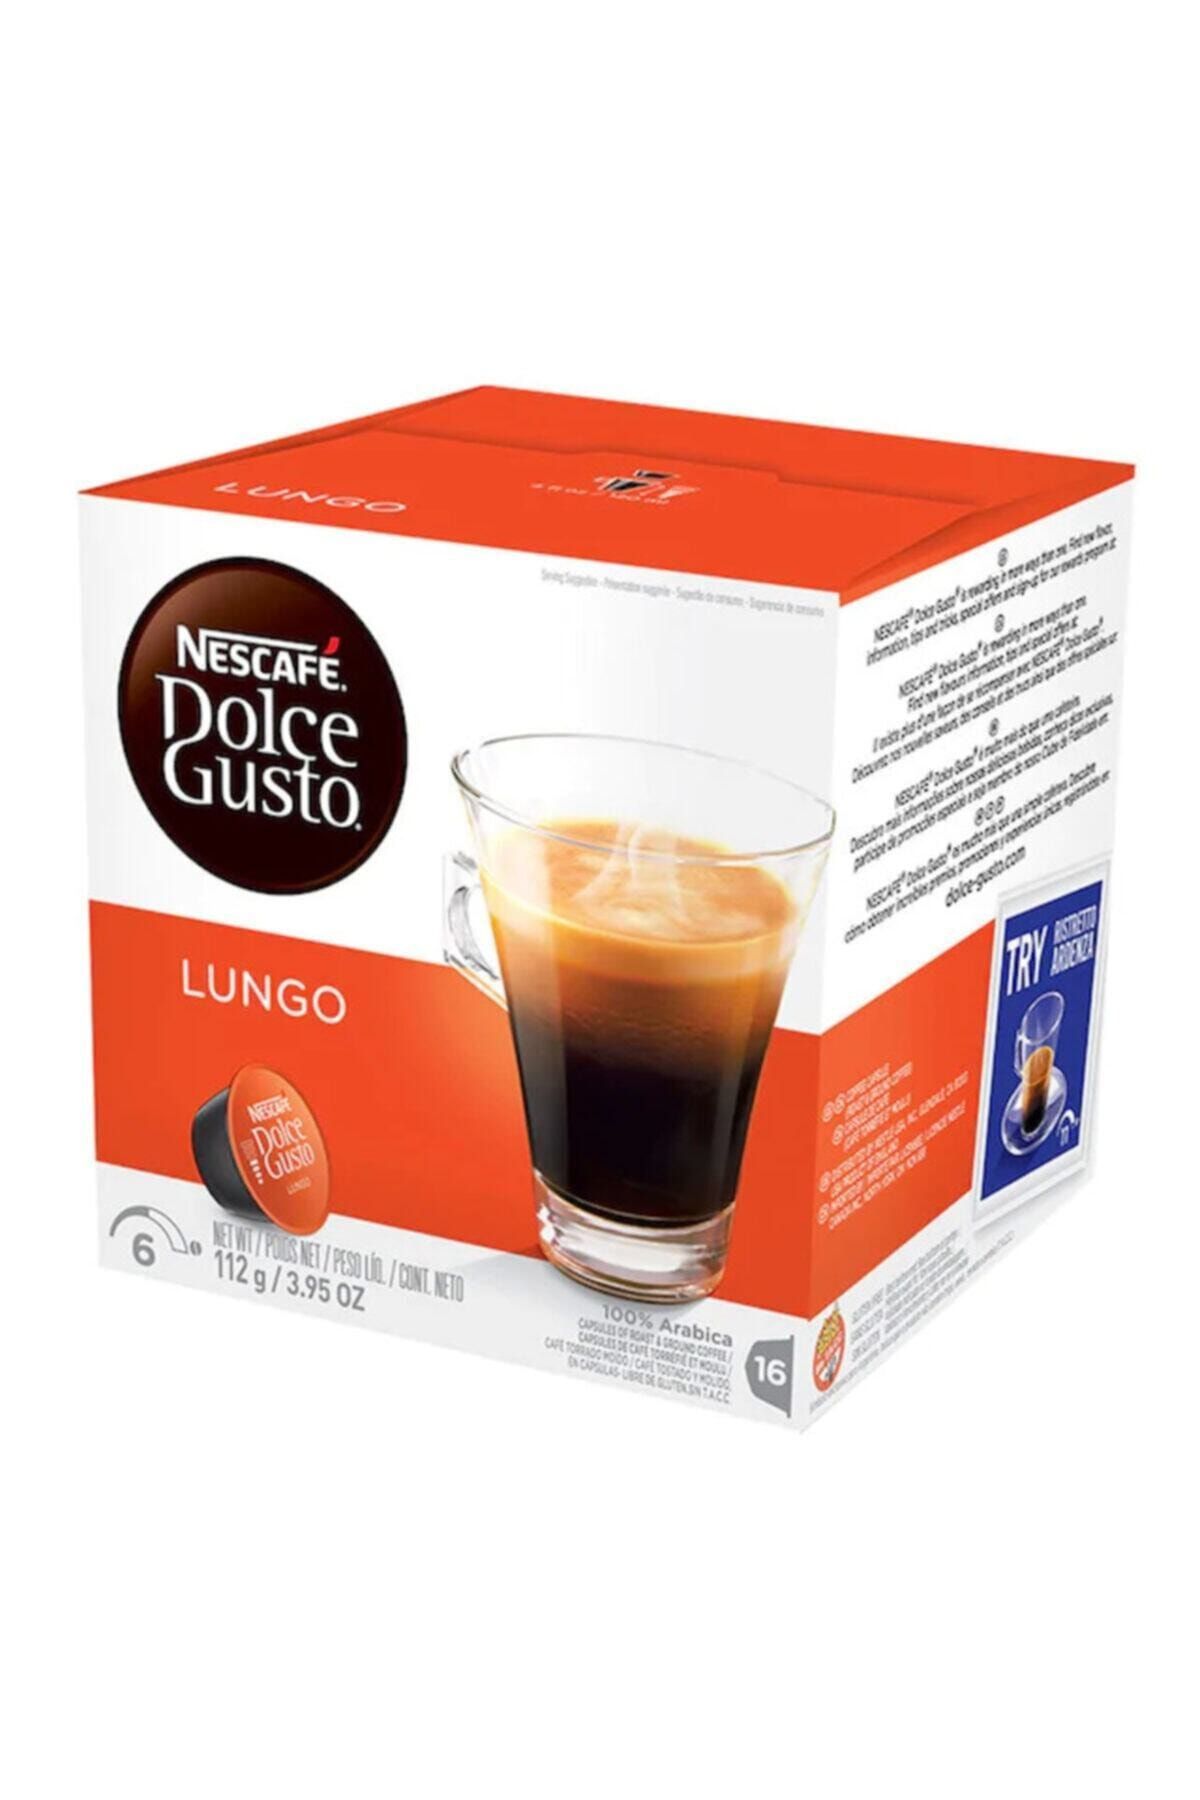 Nescafe Dolce Gusto Lungo Kahve 16 Kapsül